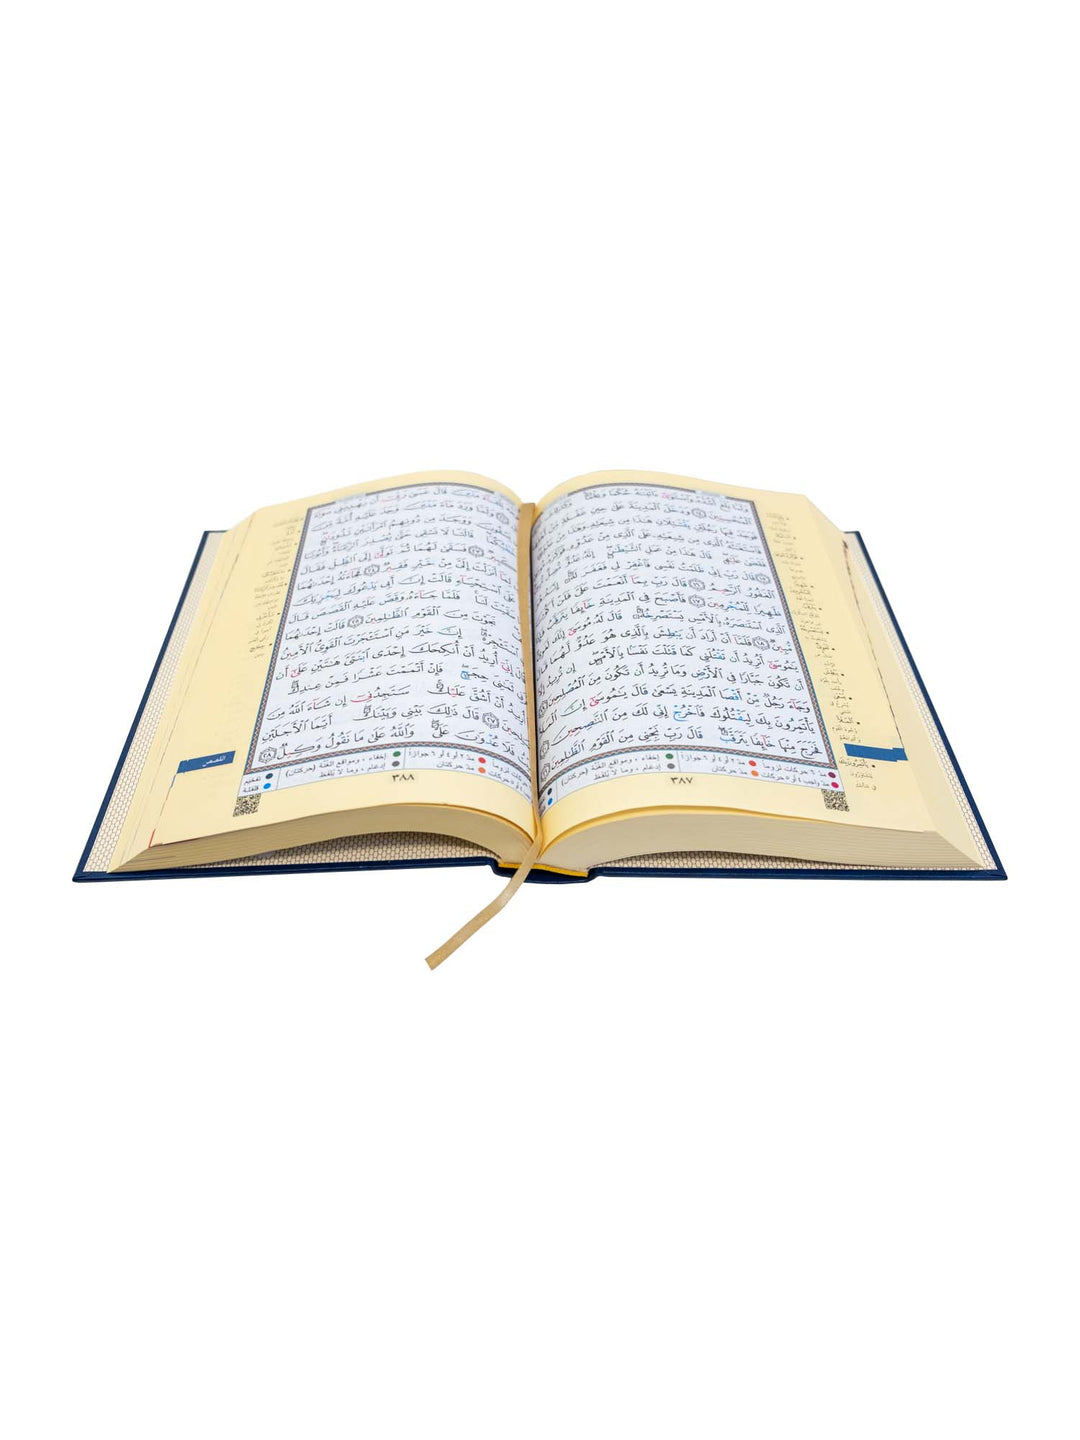 القرآن الكريم - بالخط العثماني 15 سطر - التجويد الملون - كبير - فاخر